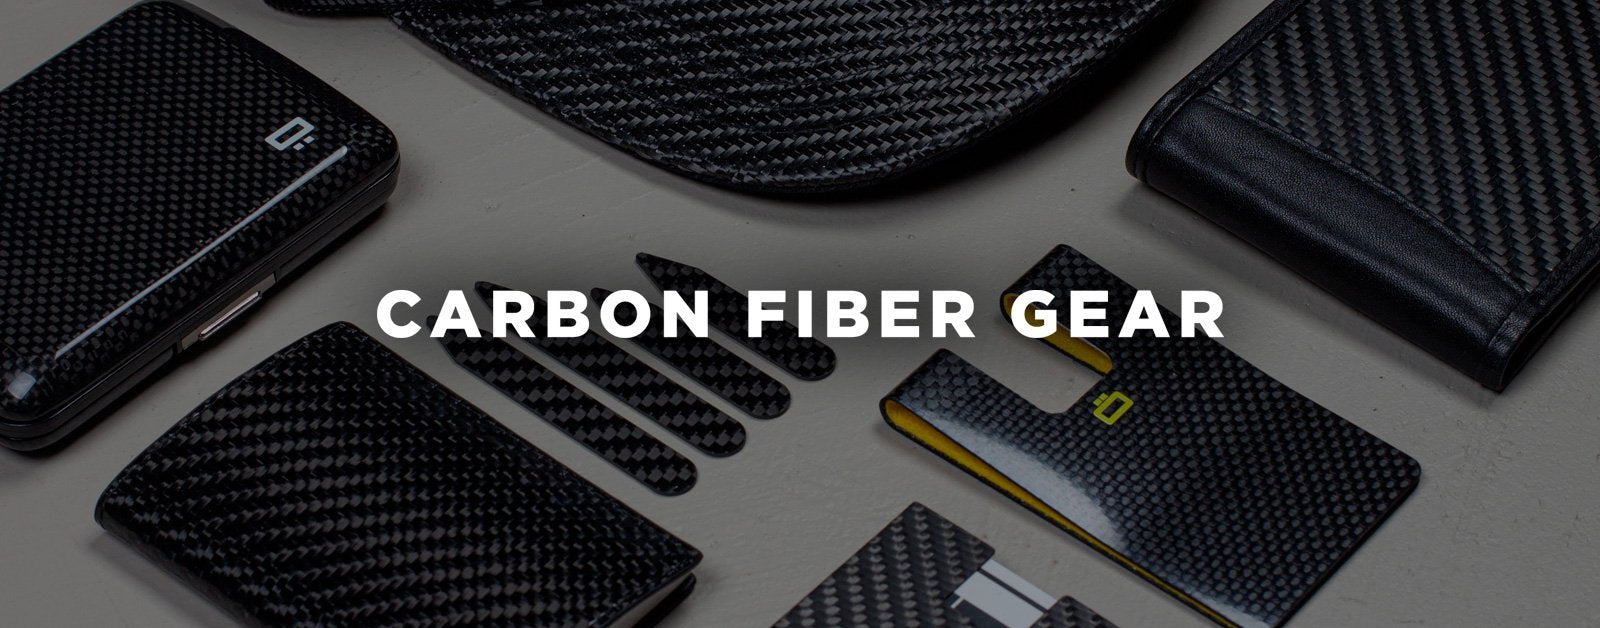 What is Carbon Fiber? – Carbon Fiber Gear